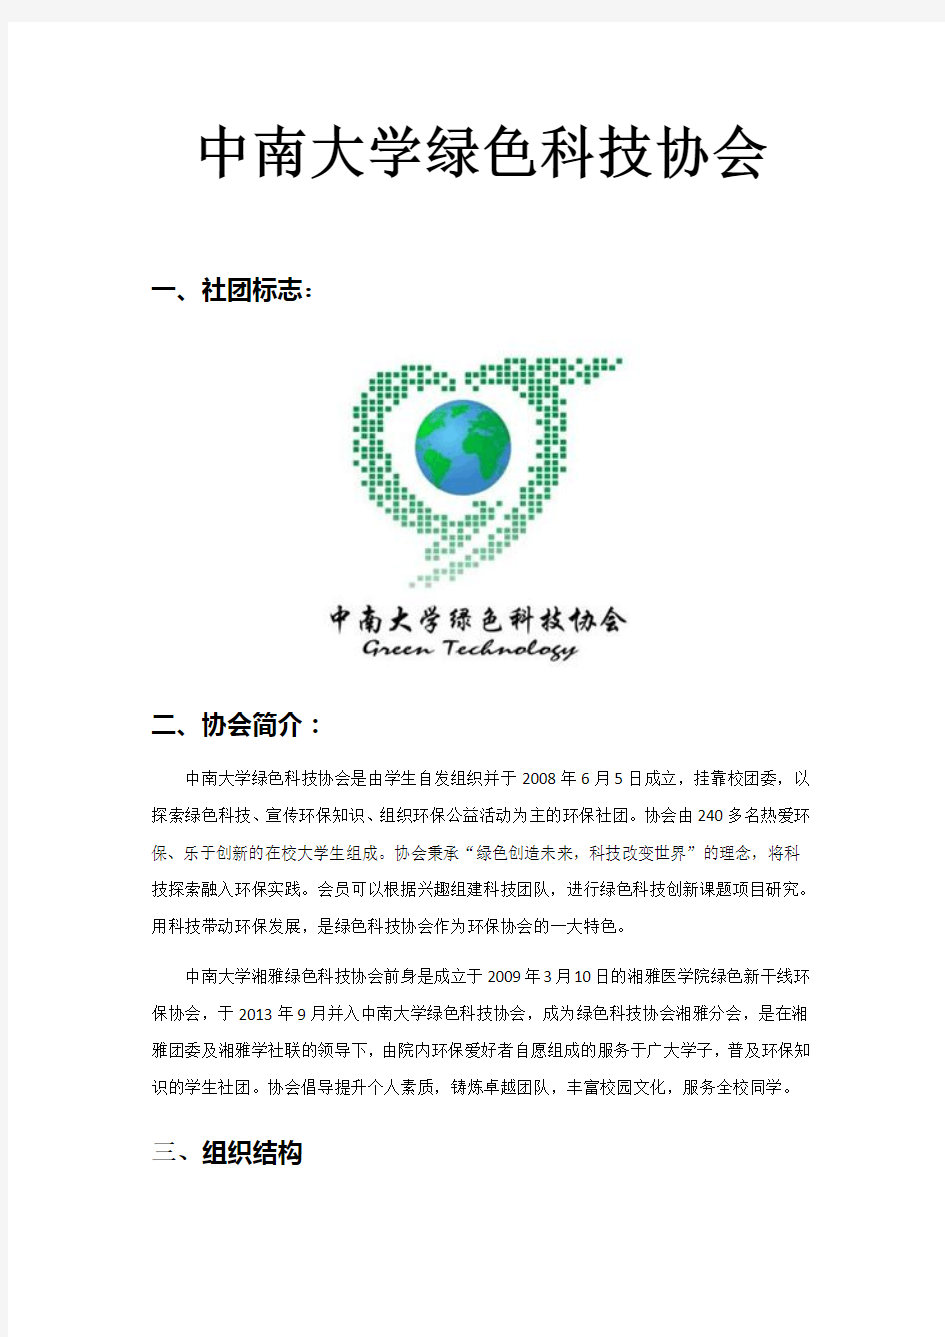 绿色科技协会(2015年上半年版)